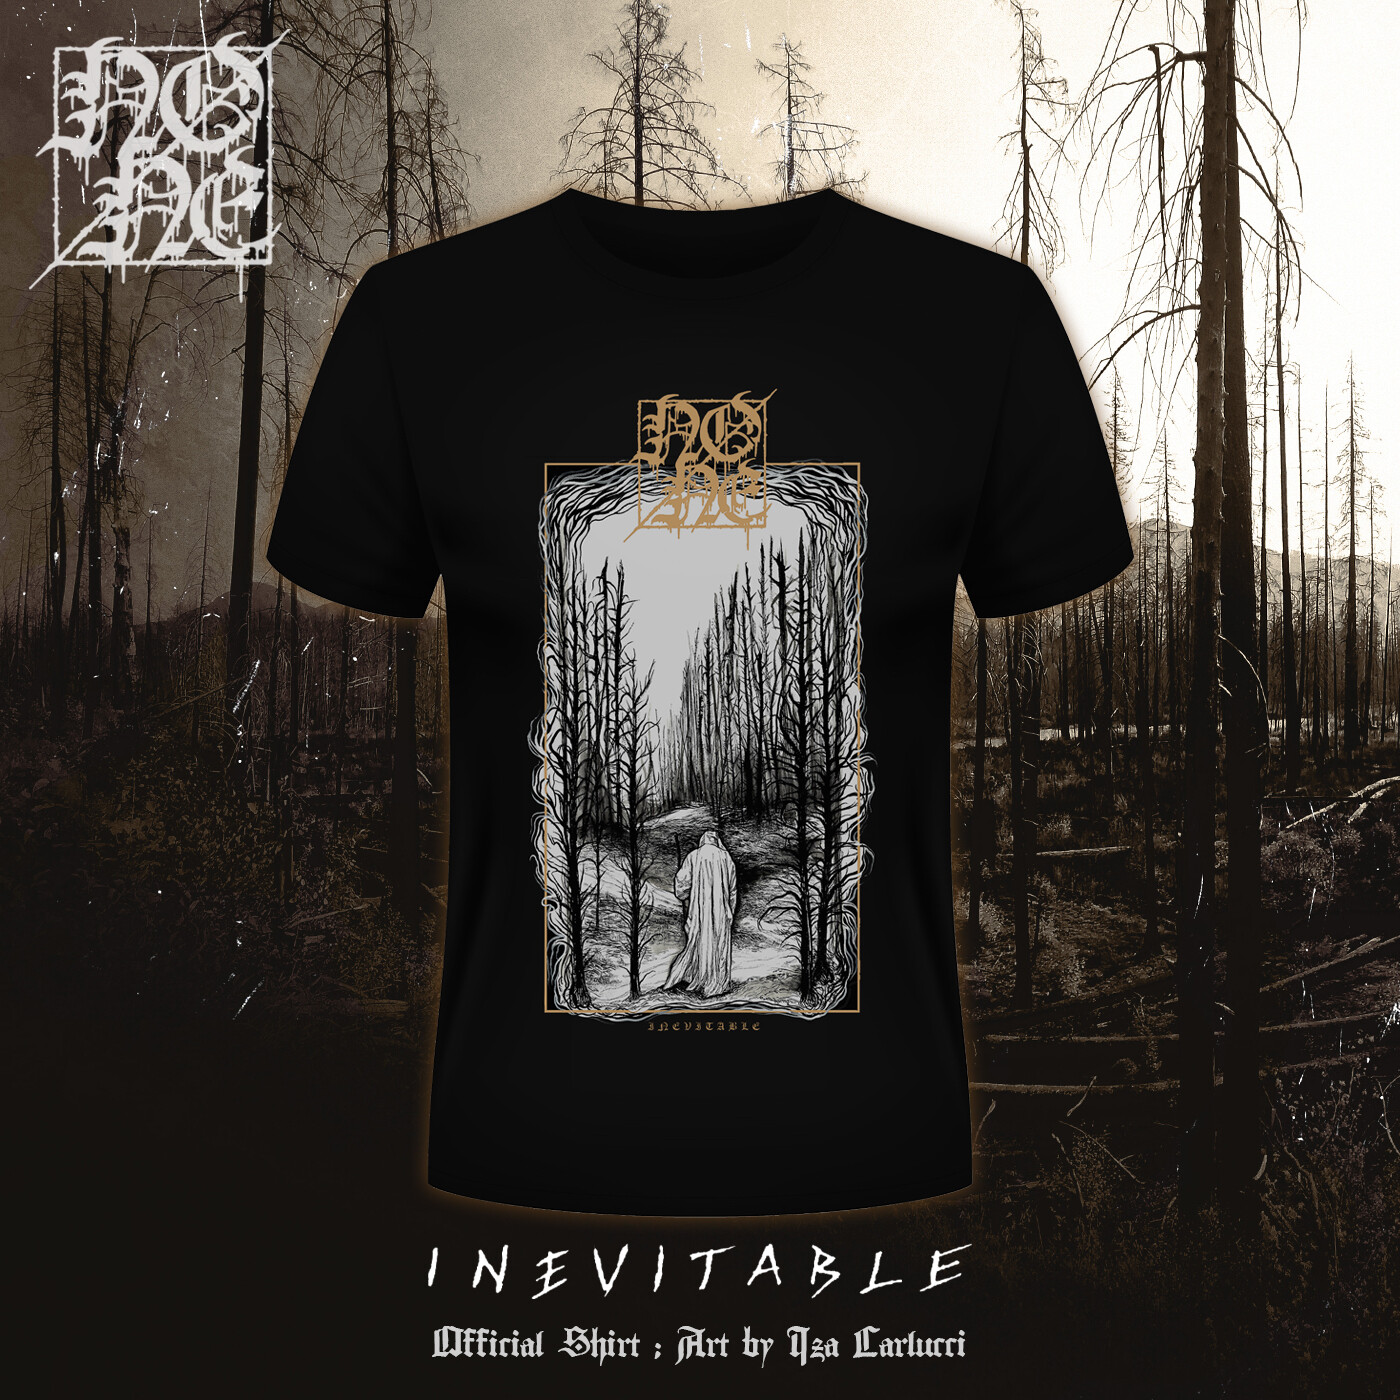 NONE - "Inevitable" Shirt